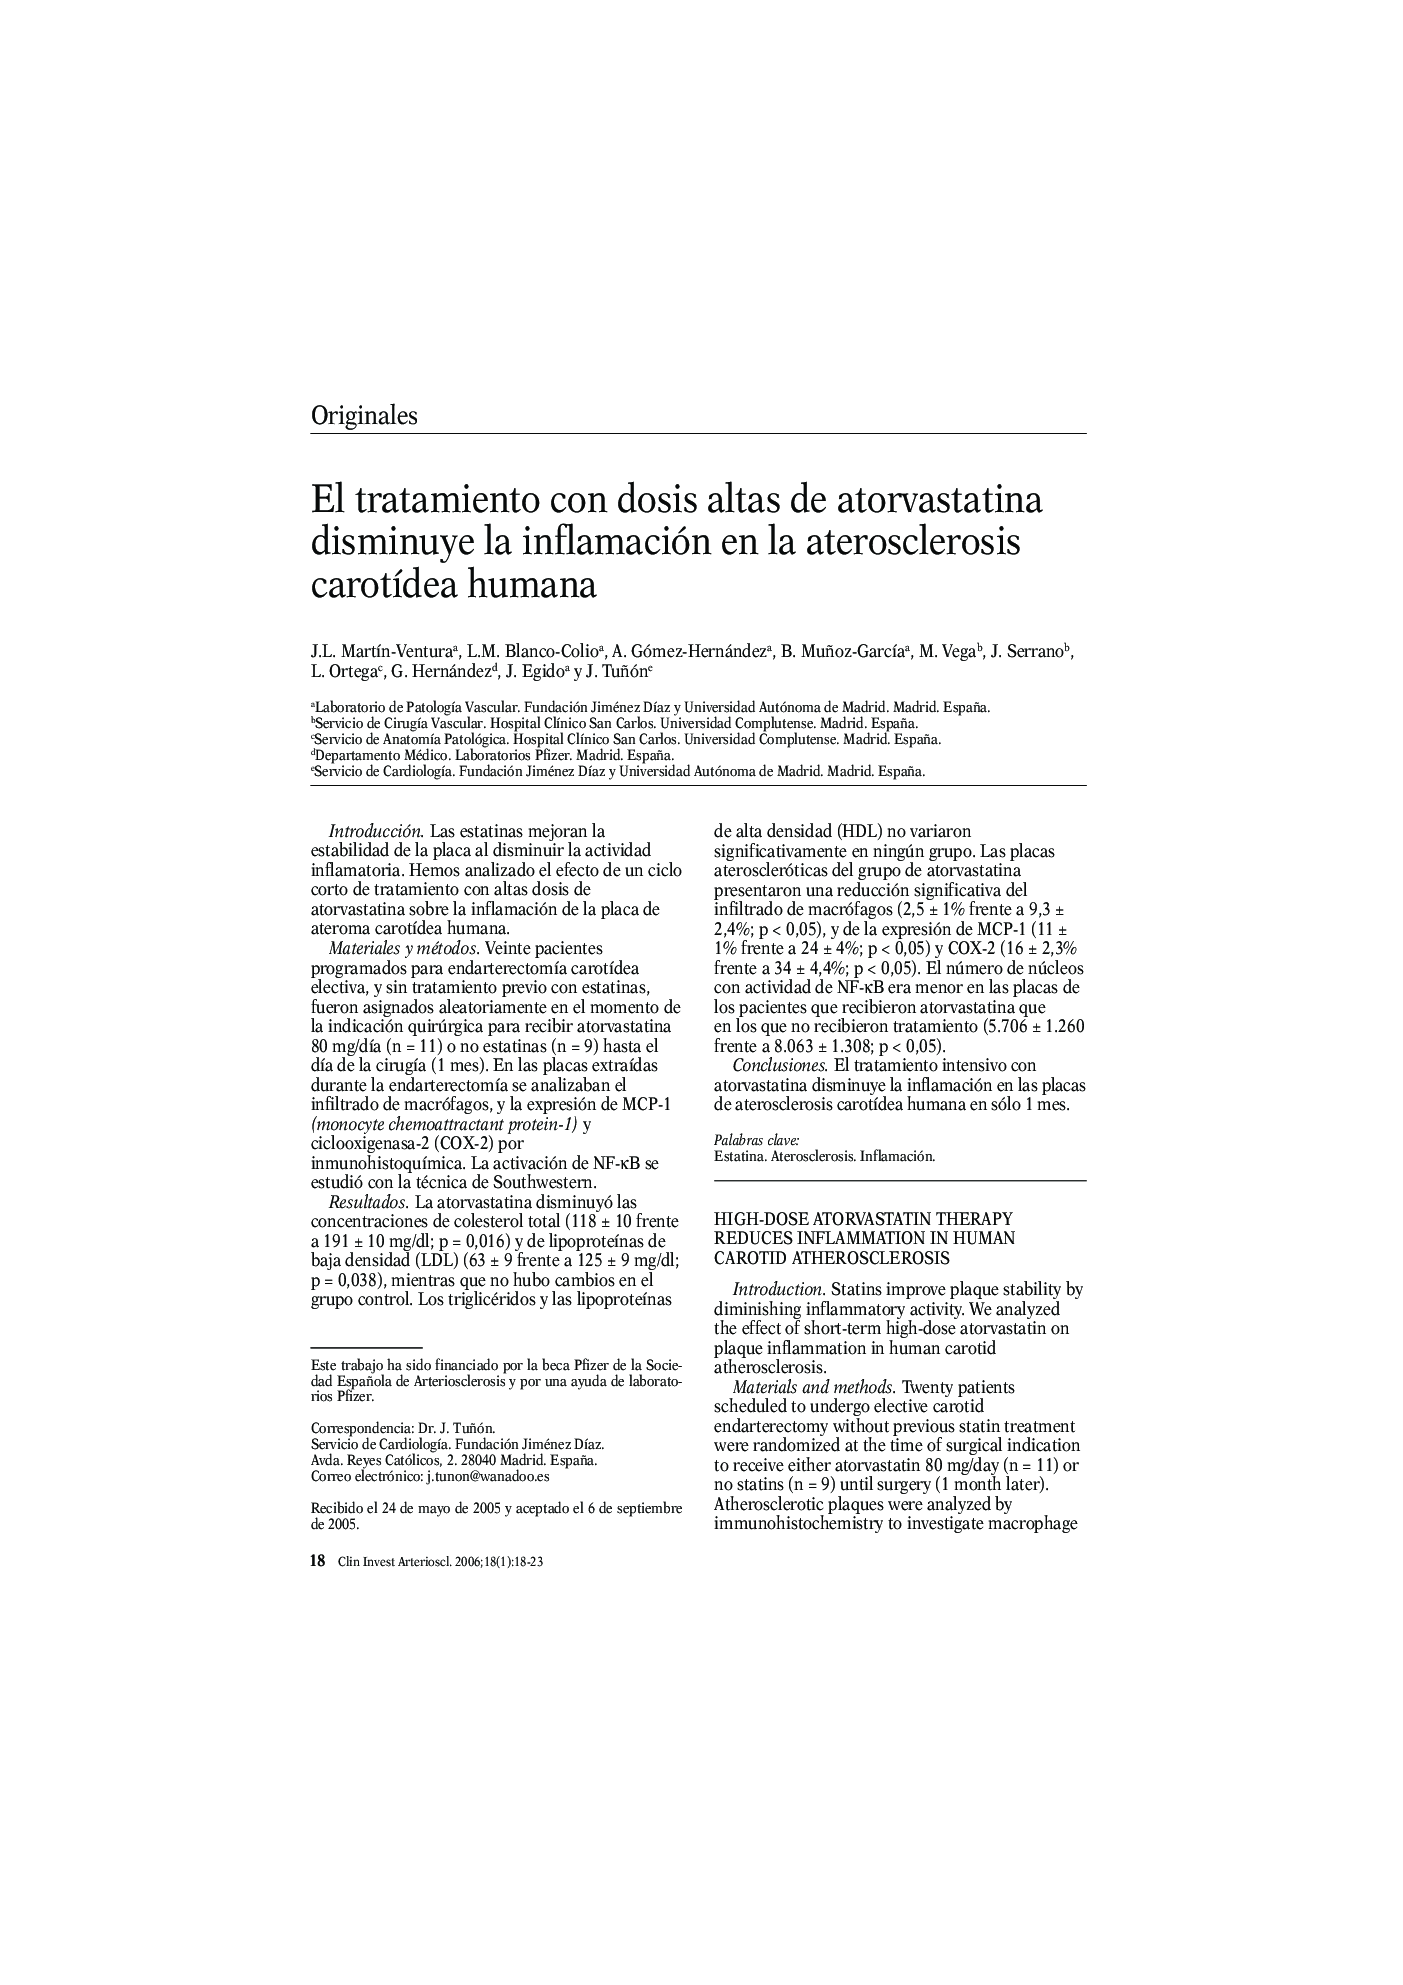 El tratamiento con dosis altas de atorvastatina disminuye la inflamación en la aterosclerosis carotÃ­dea humana